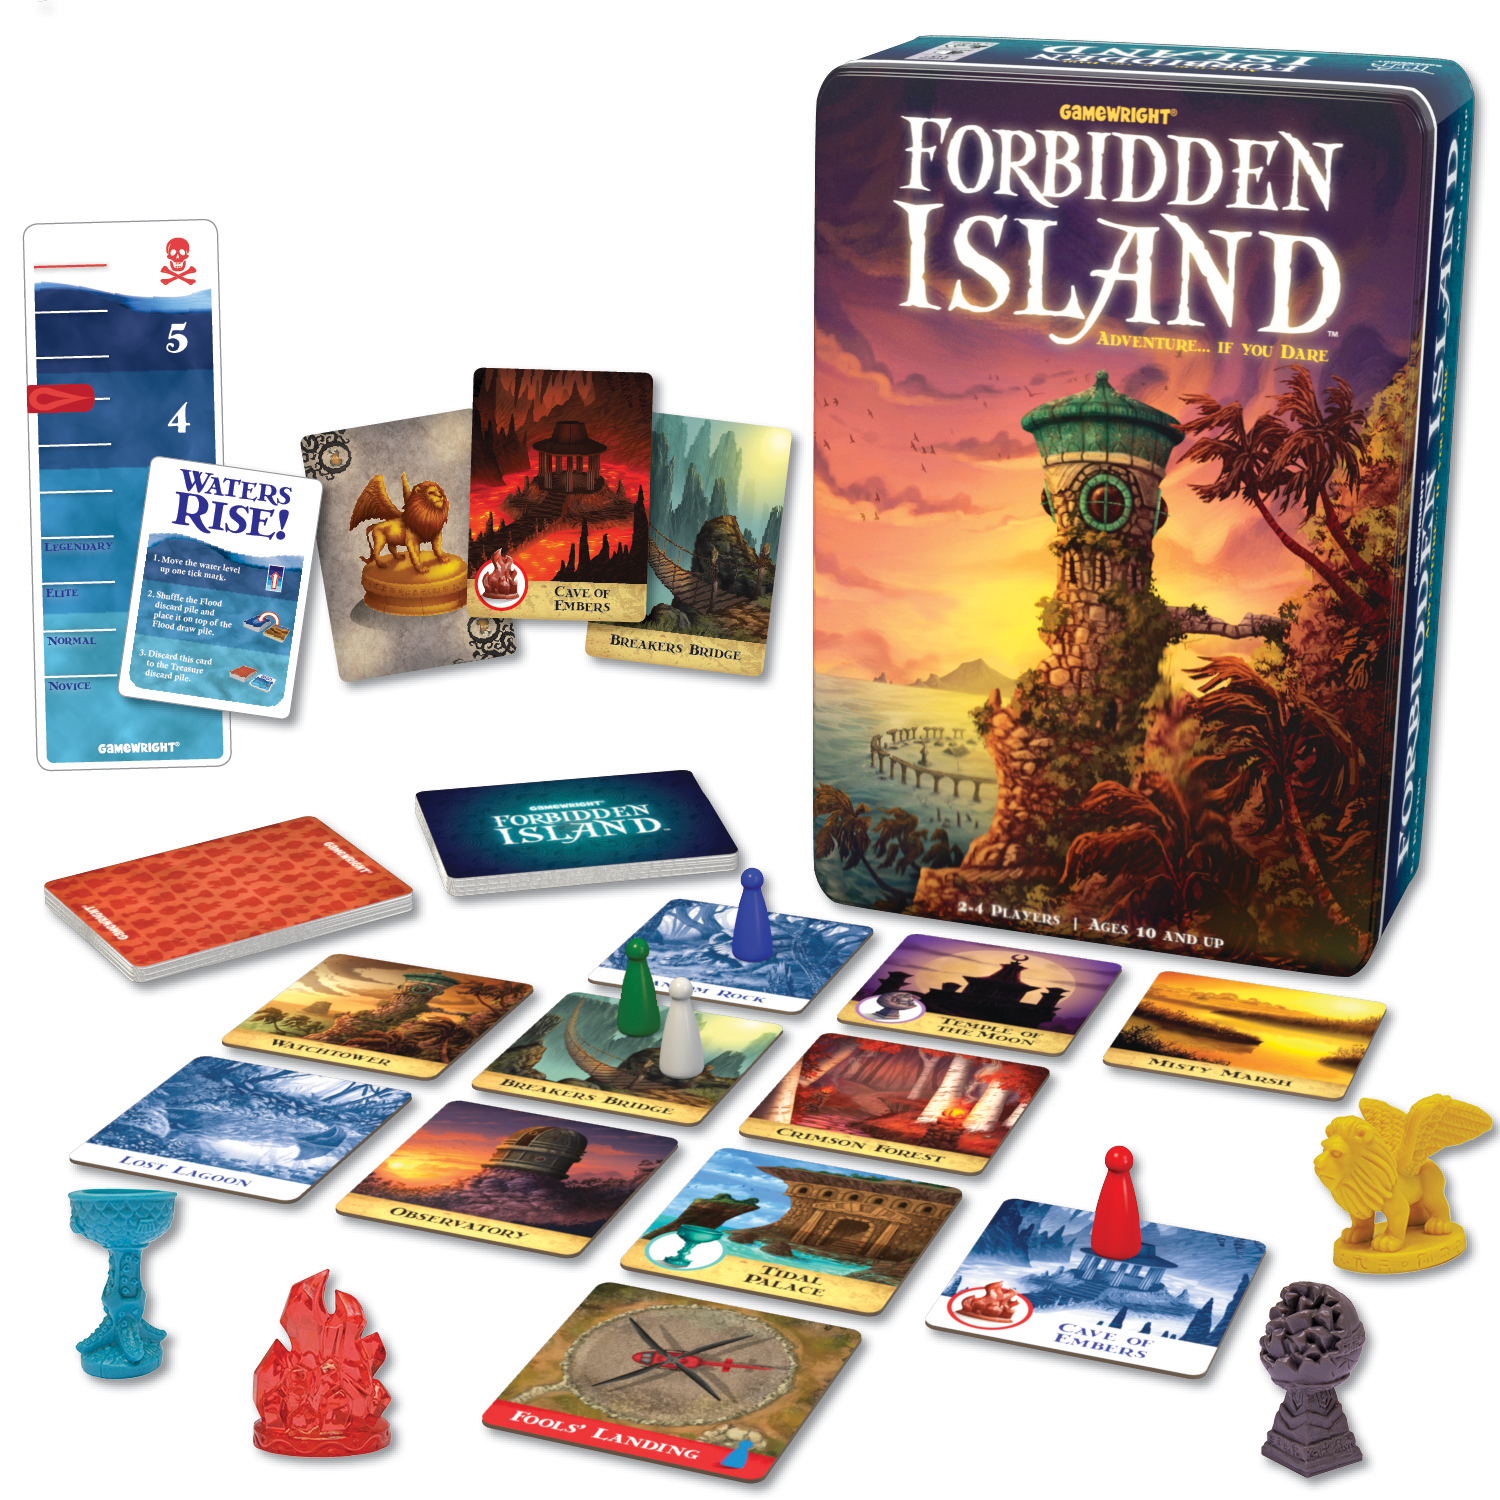 Forbidden Island cover